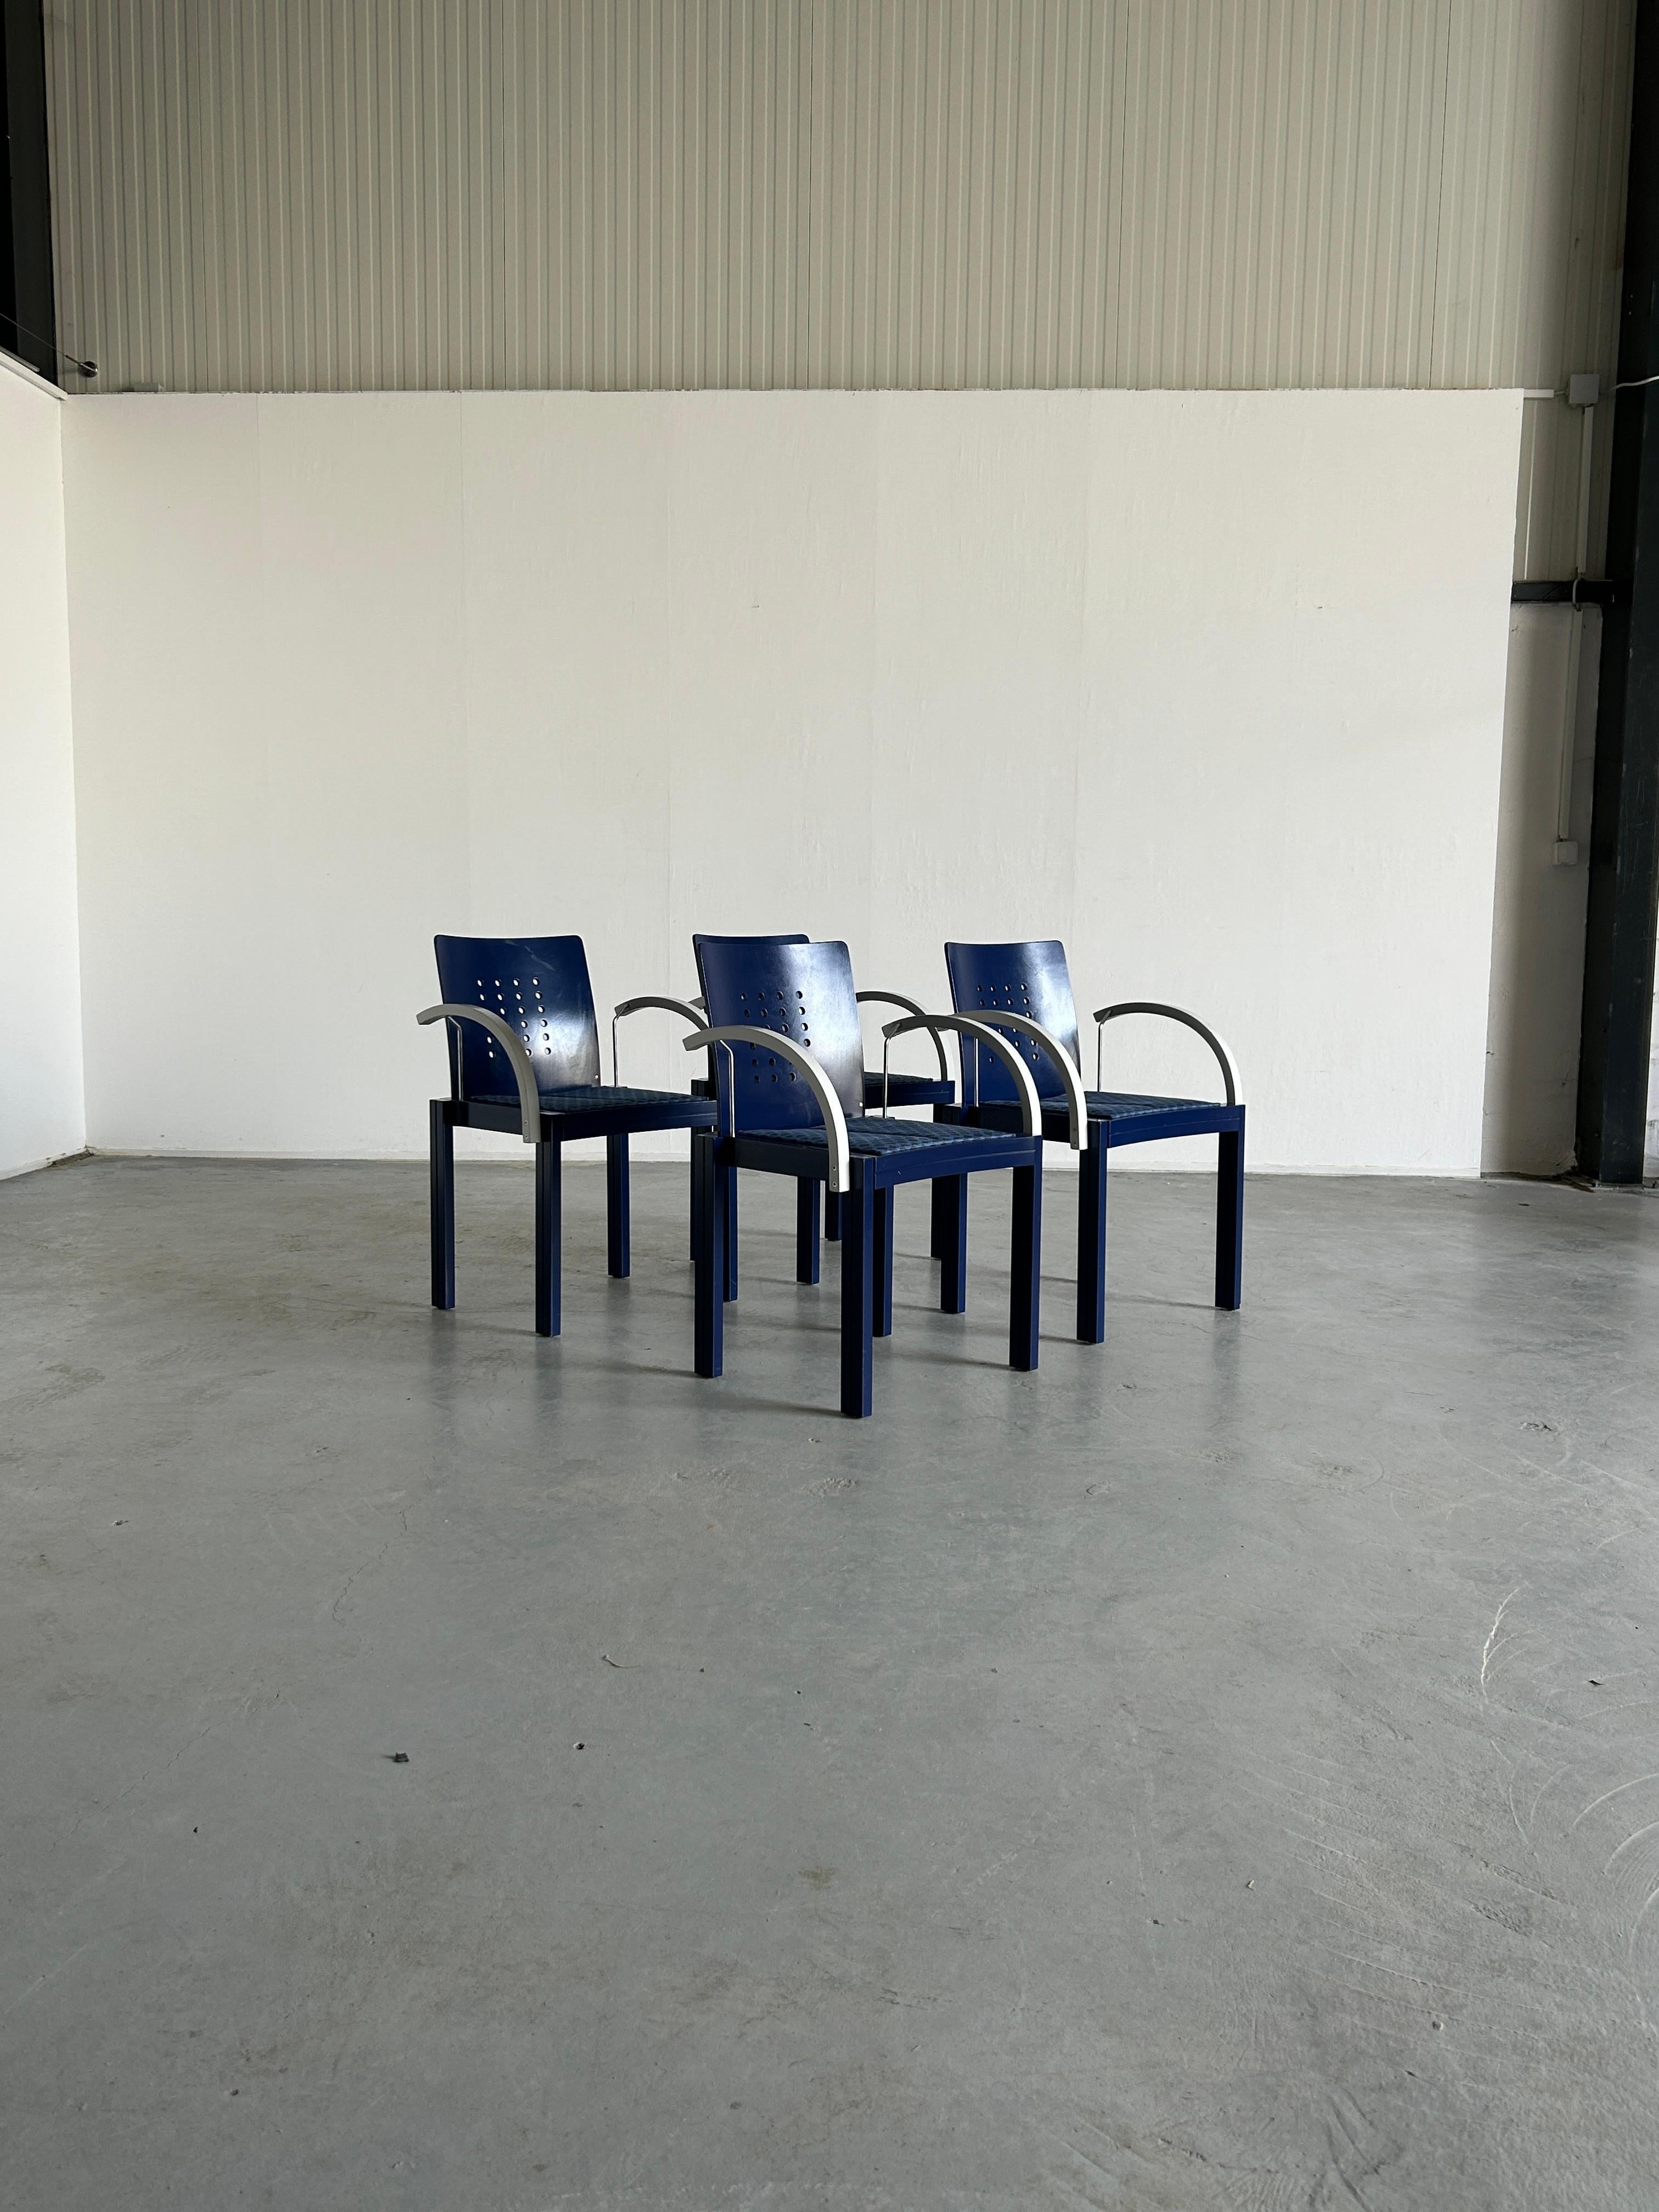 Ensemble de quatre chaises de salle à manger Thonet d'origine, de conception postmoderne Memphis, exceptionnellement rares et de collection.
Sculpture et forme géométrique.

Produit par Thonet Vienna en 1996.
Fabriqué en qualité et en bon état